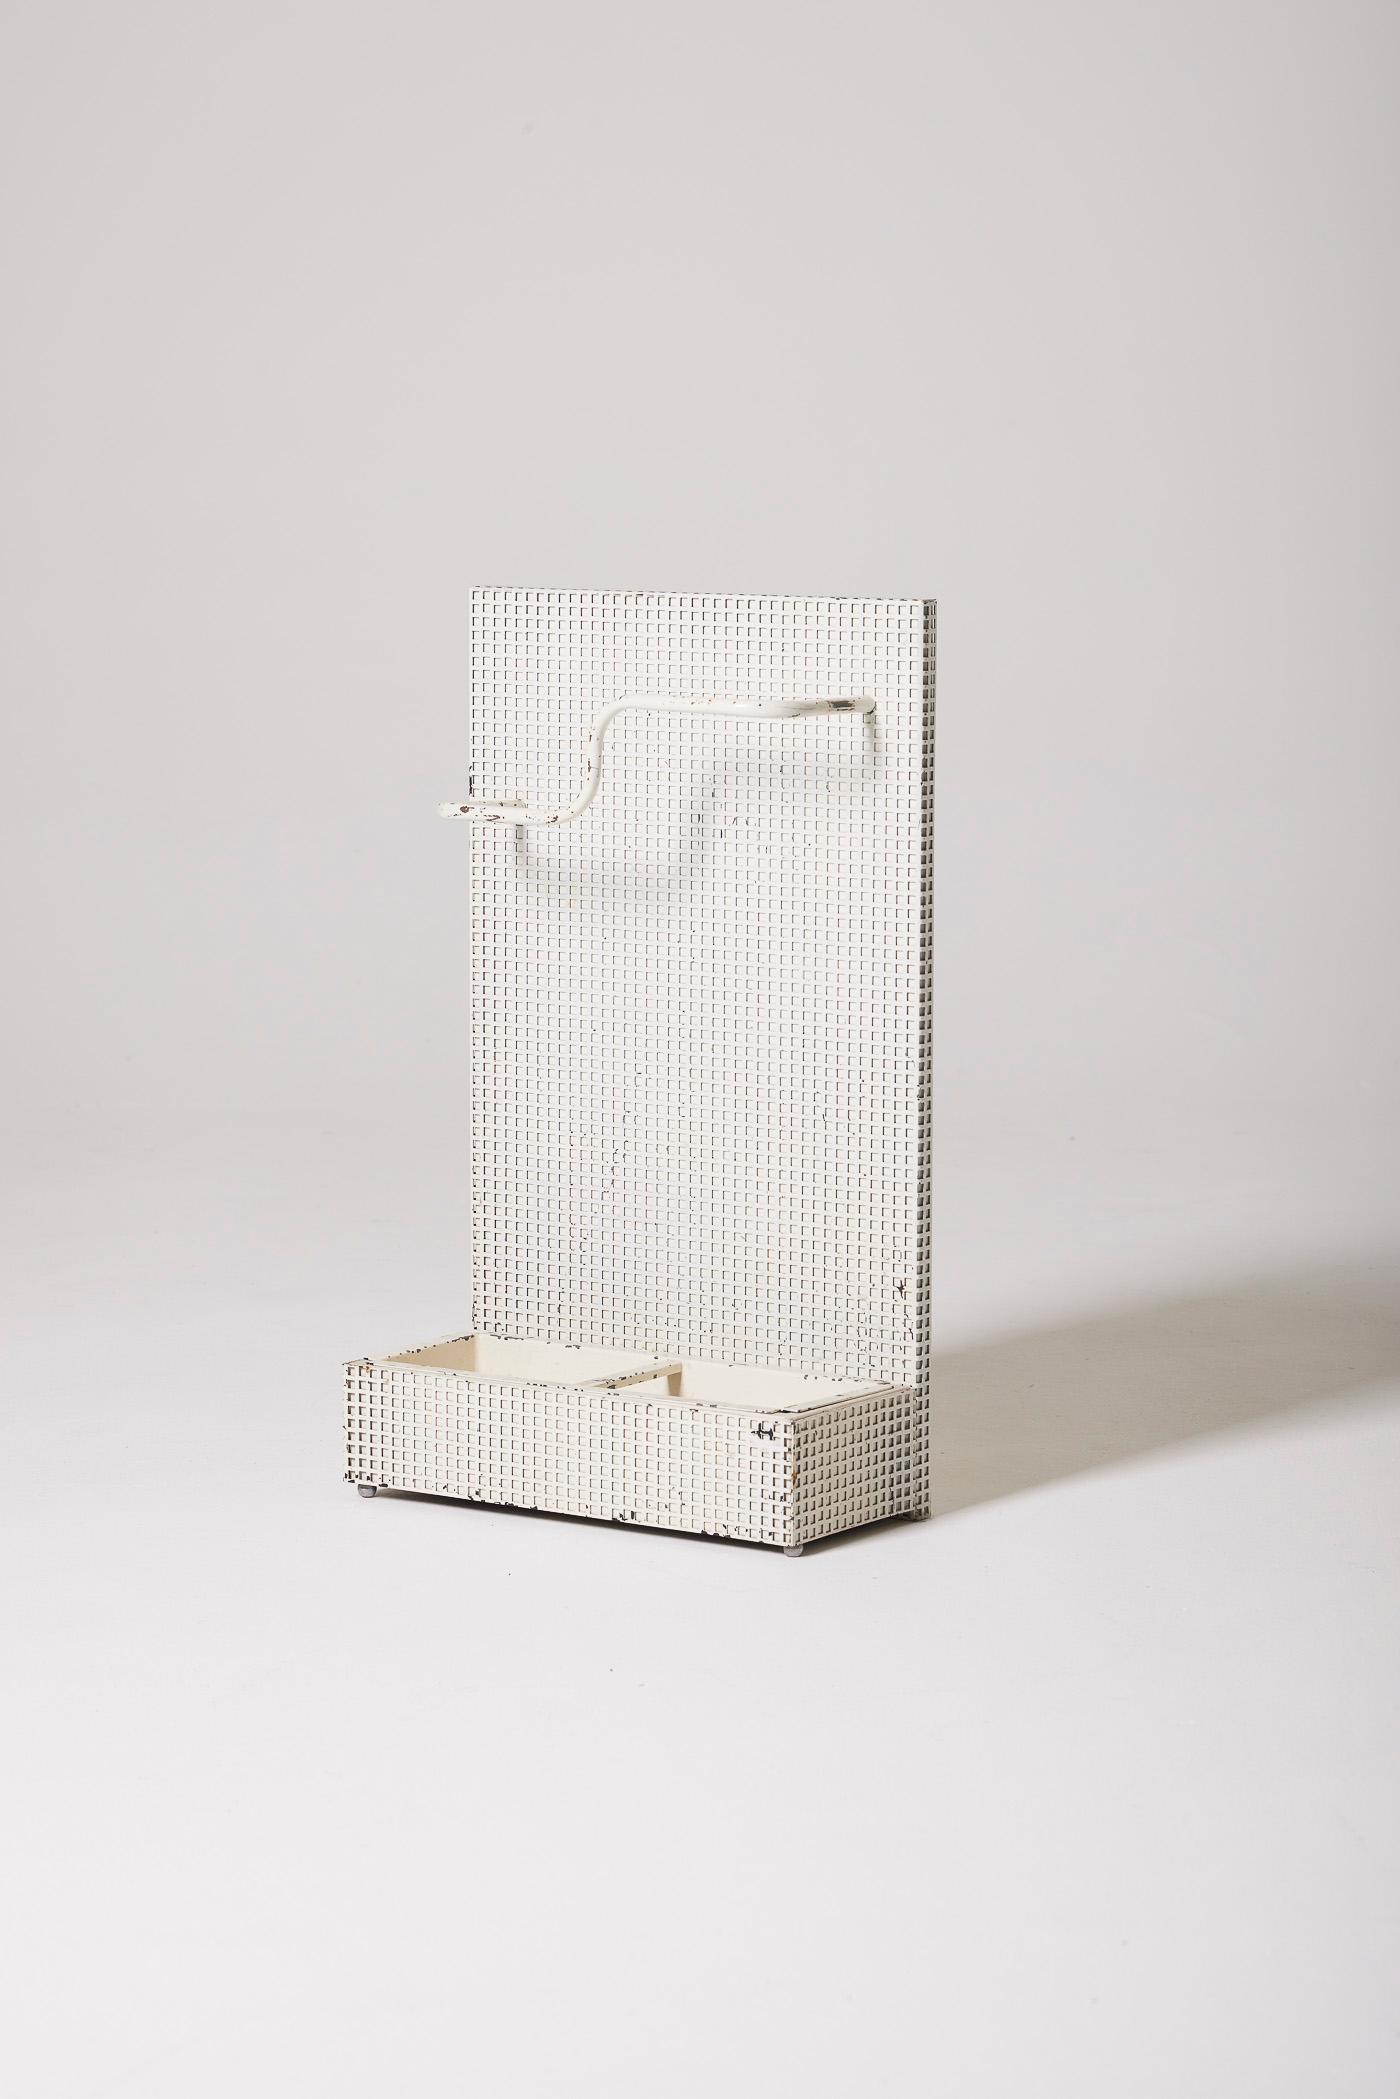 Schirmständer des Designers Tjerk Reijenga für Pilastro, 1960er Jahre. Es ist aus perforiertem weißem Metall im Stil des Designers Josef Hoffmann. Abgenutzte Patina.
DV457